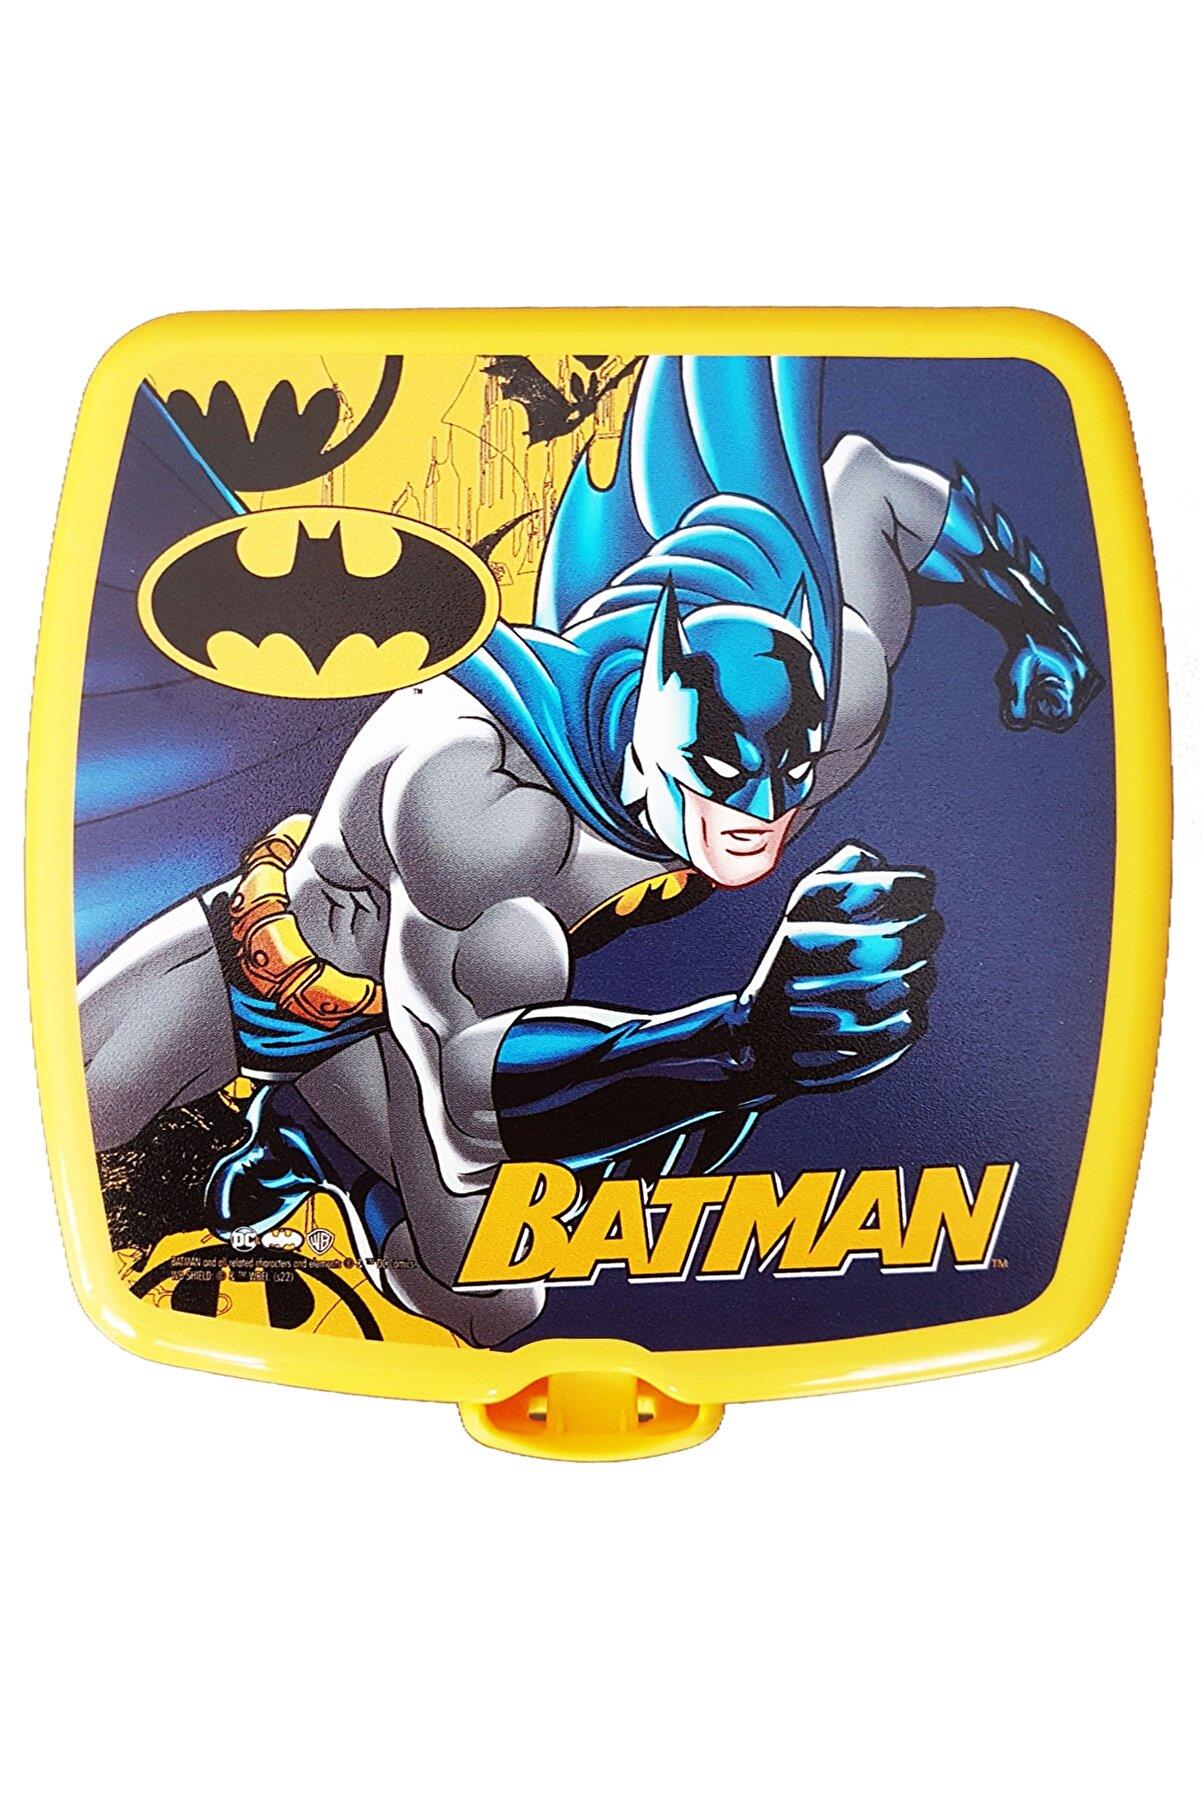 Mashotrend Batman Yemek Kabı - Batman Beslenme Kabı - Lisanslı Batman Yemek Kabı - Beslenme Çantası